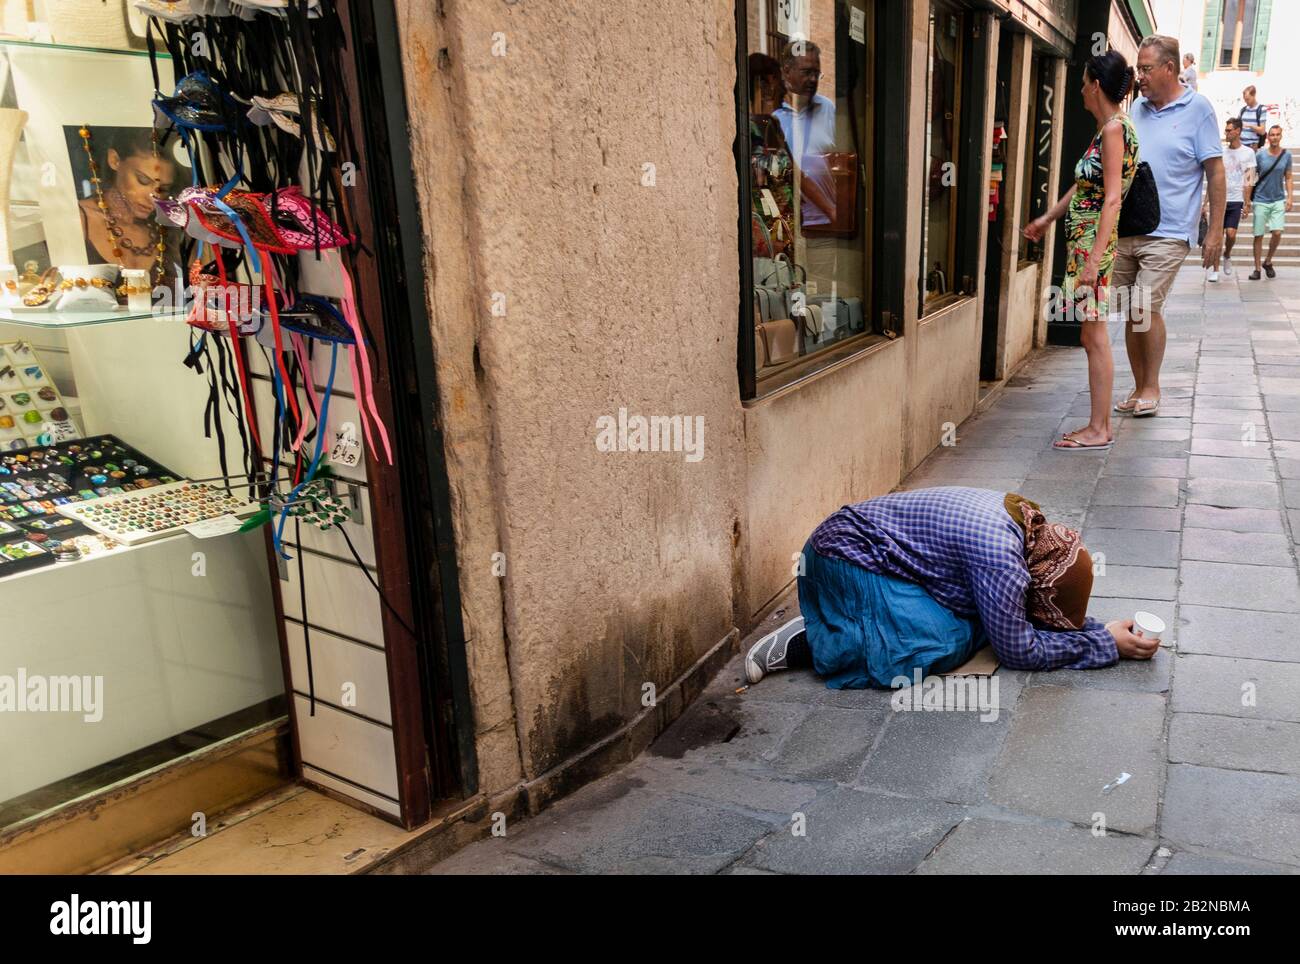 Donne che implorano per le strade di Venezia, Italia Foto Stock